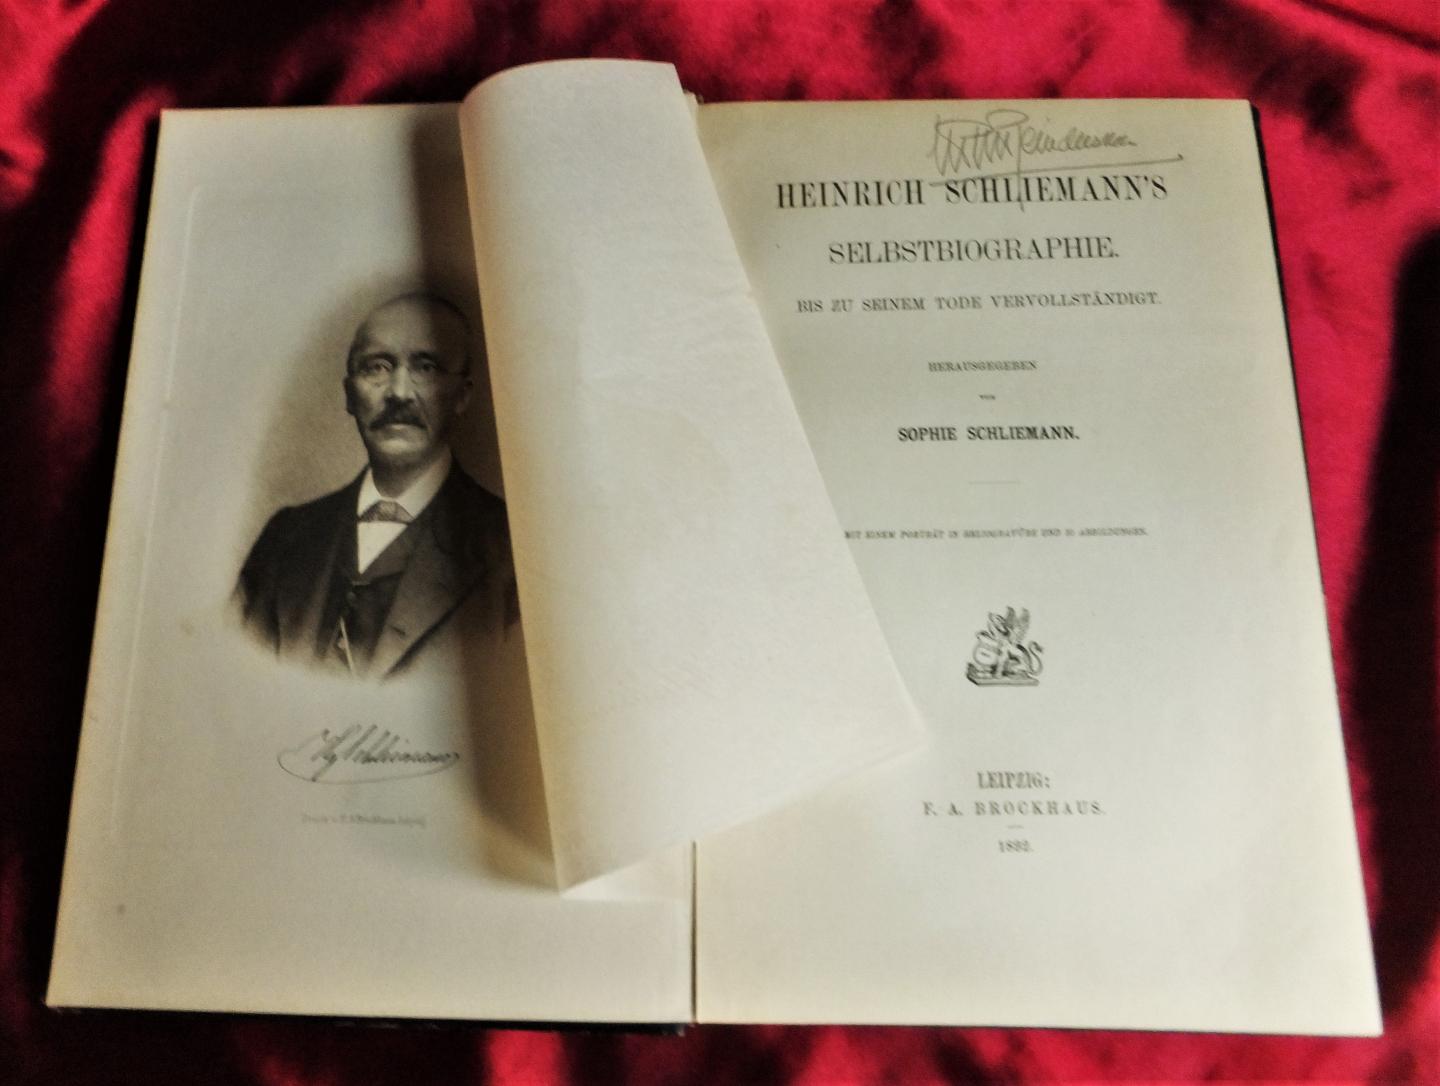 Schliemann,Sophie - Heinrich Schliemann's Selbstbiographie bis zu seinem Tode vervollständigt